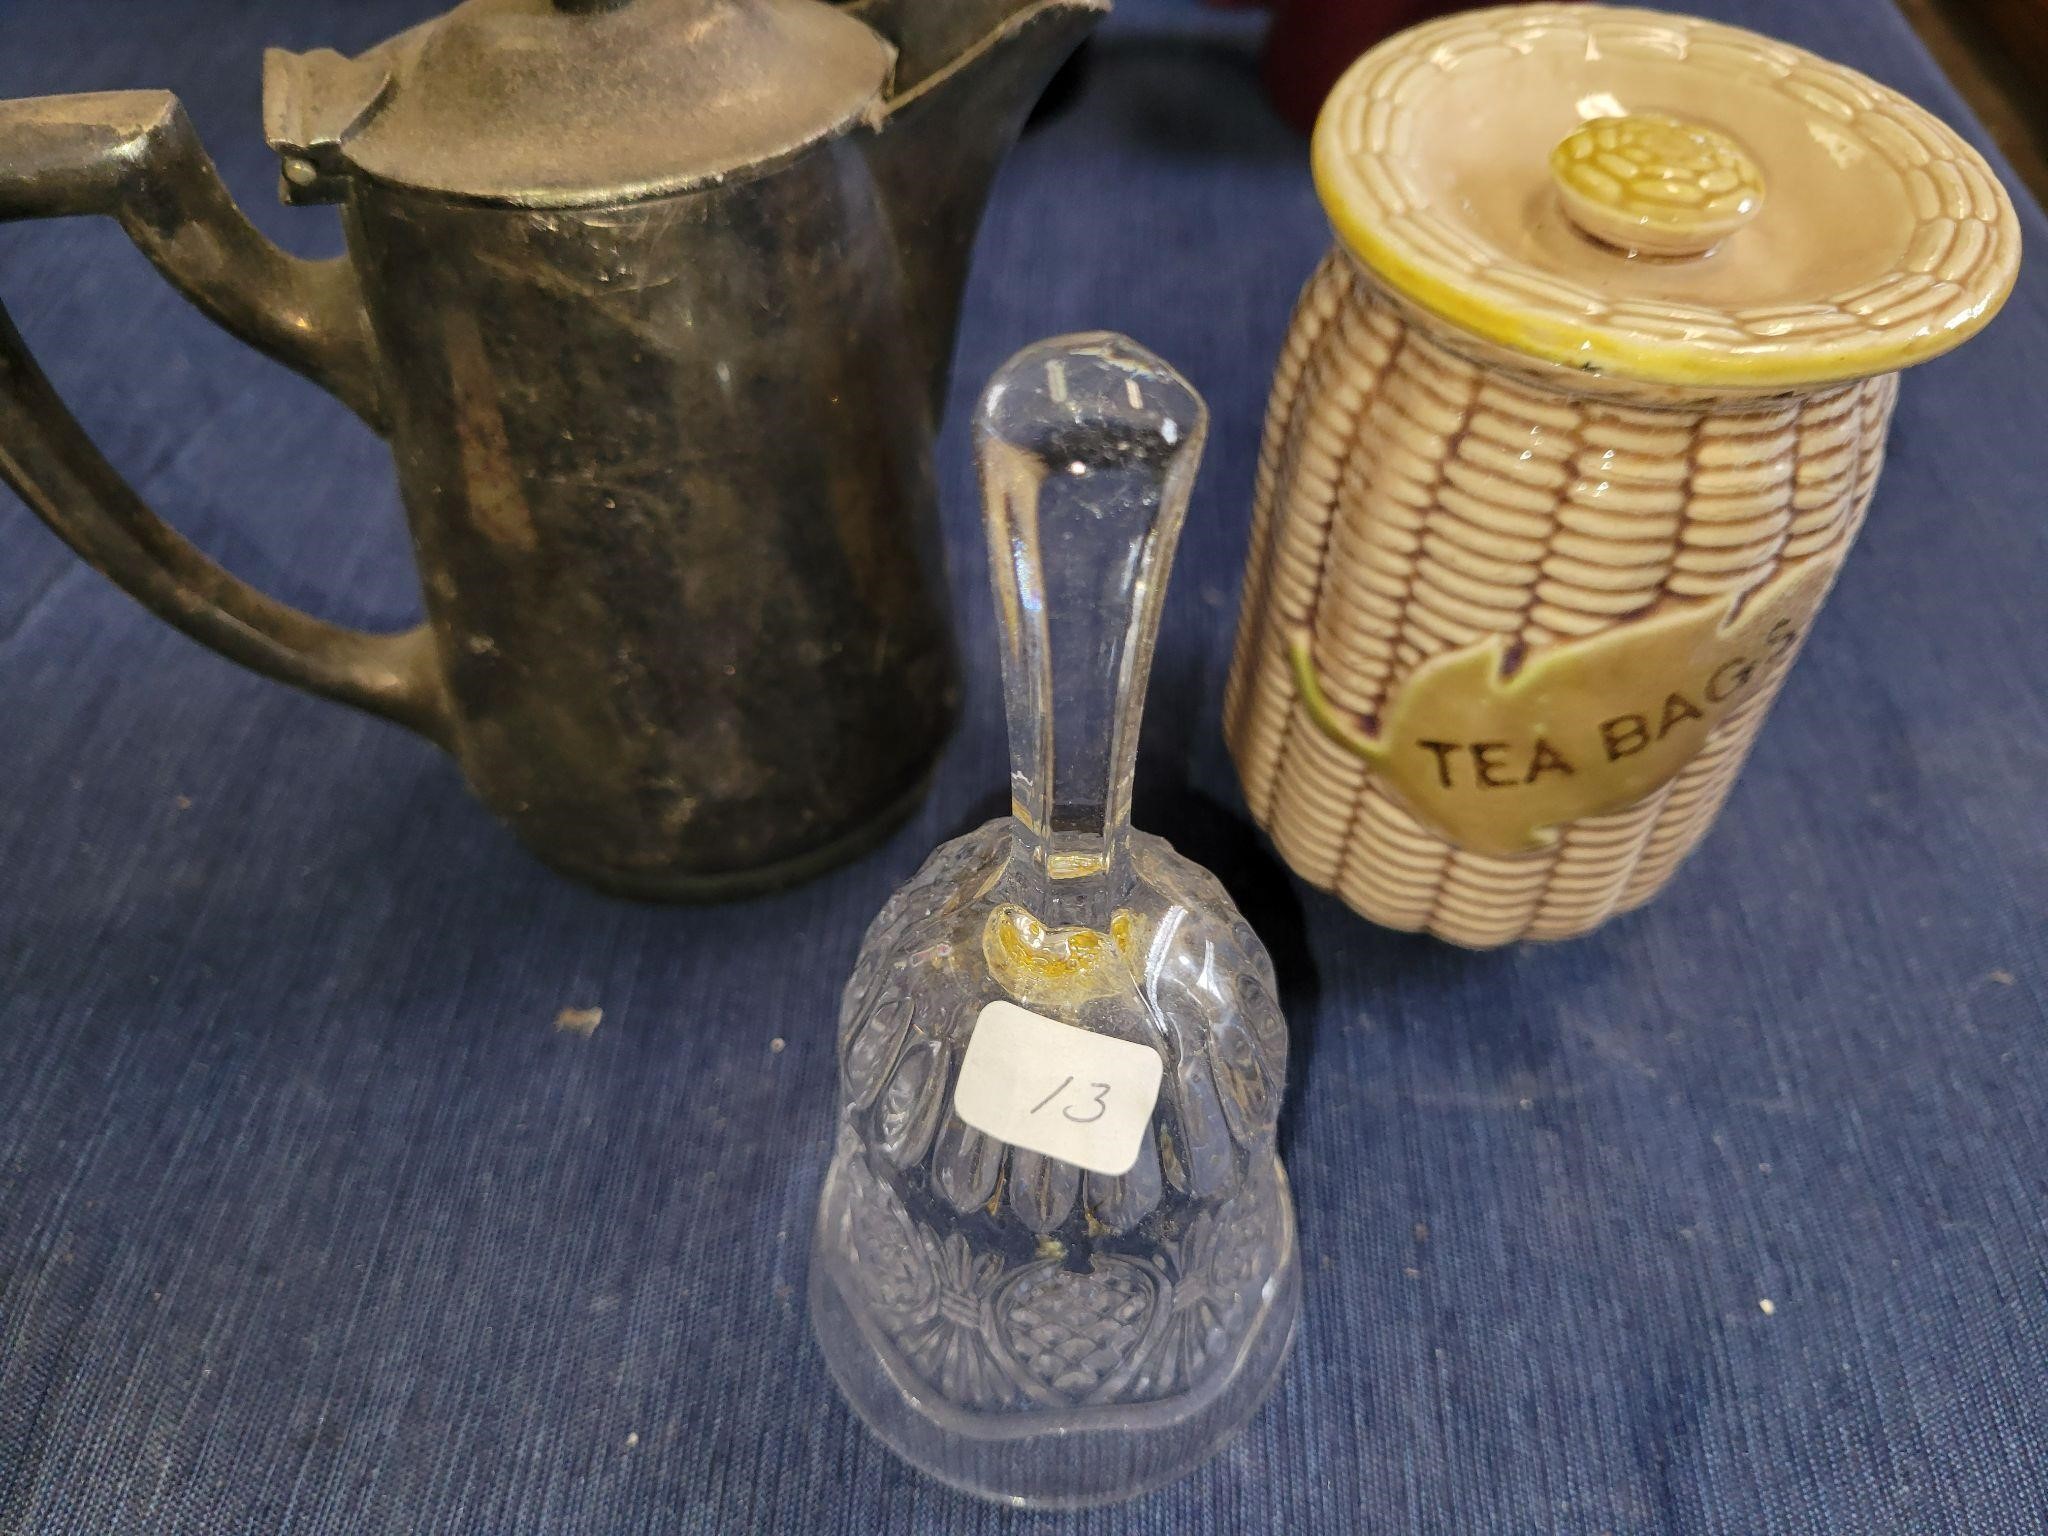 Vintage bell, tea bag canister, tea kettle